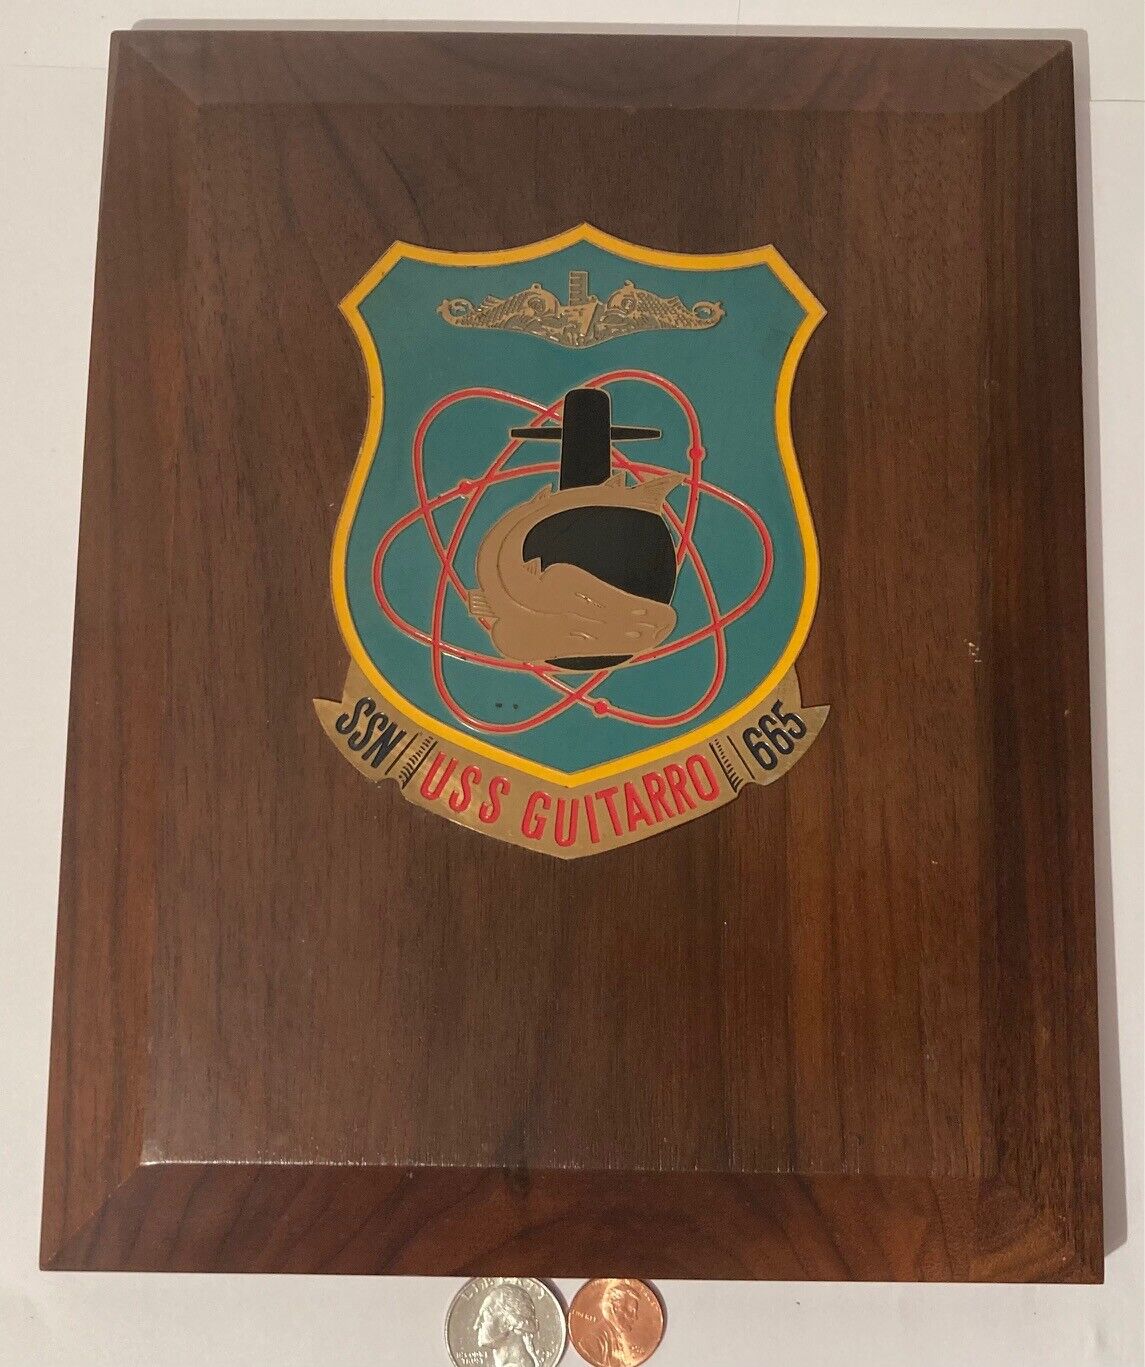 Vintage Wooden and Metal Navy Plaque, U.S.S. Guitarro SSN-665, U.S. Navy